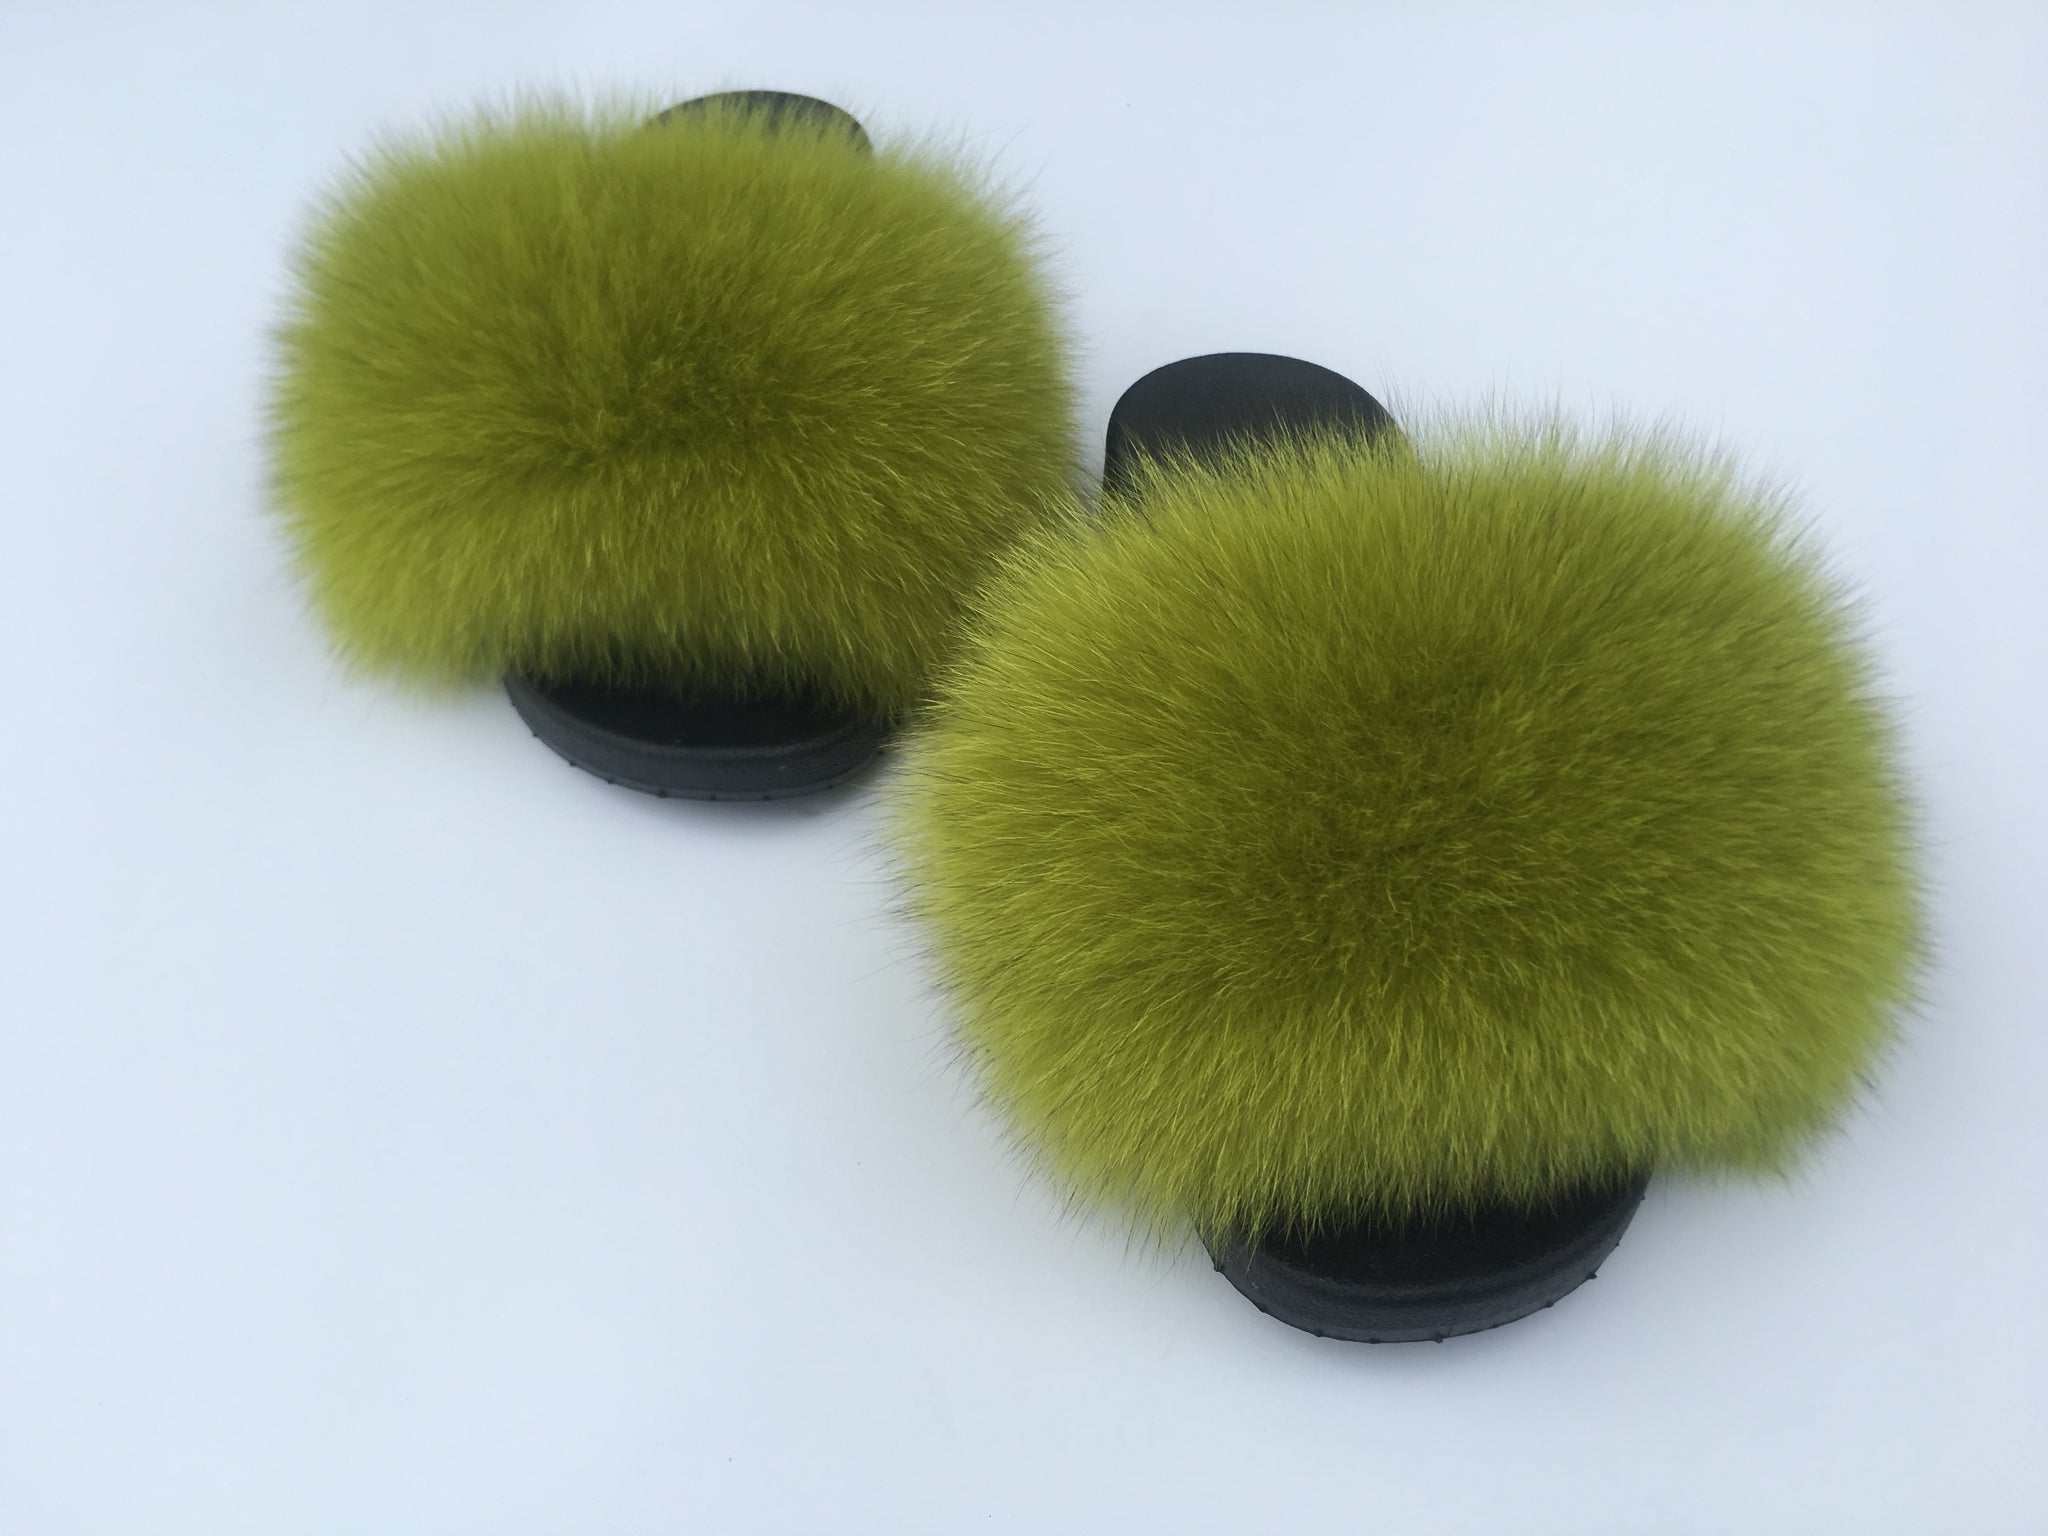 green fluffy sliders